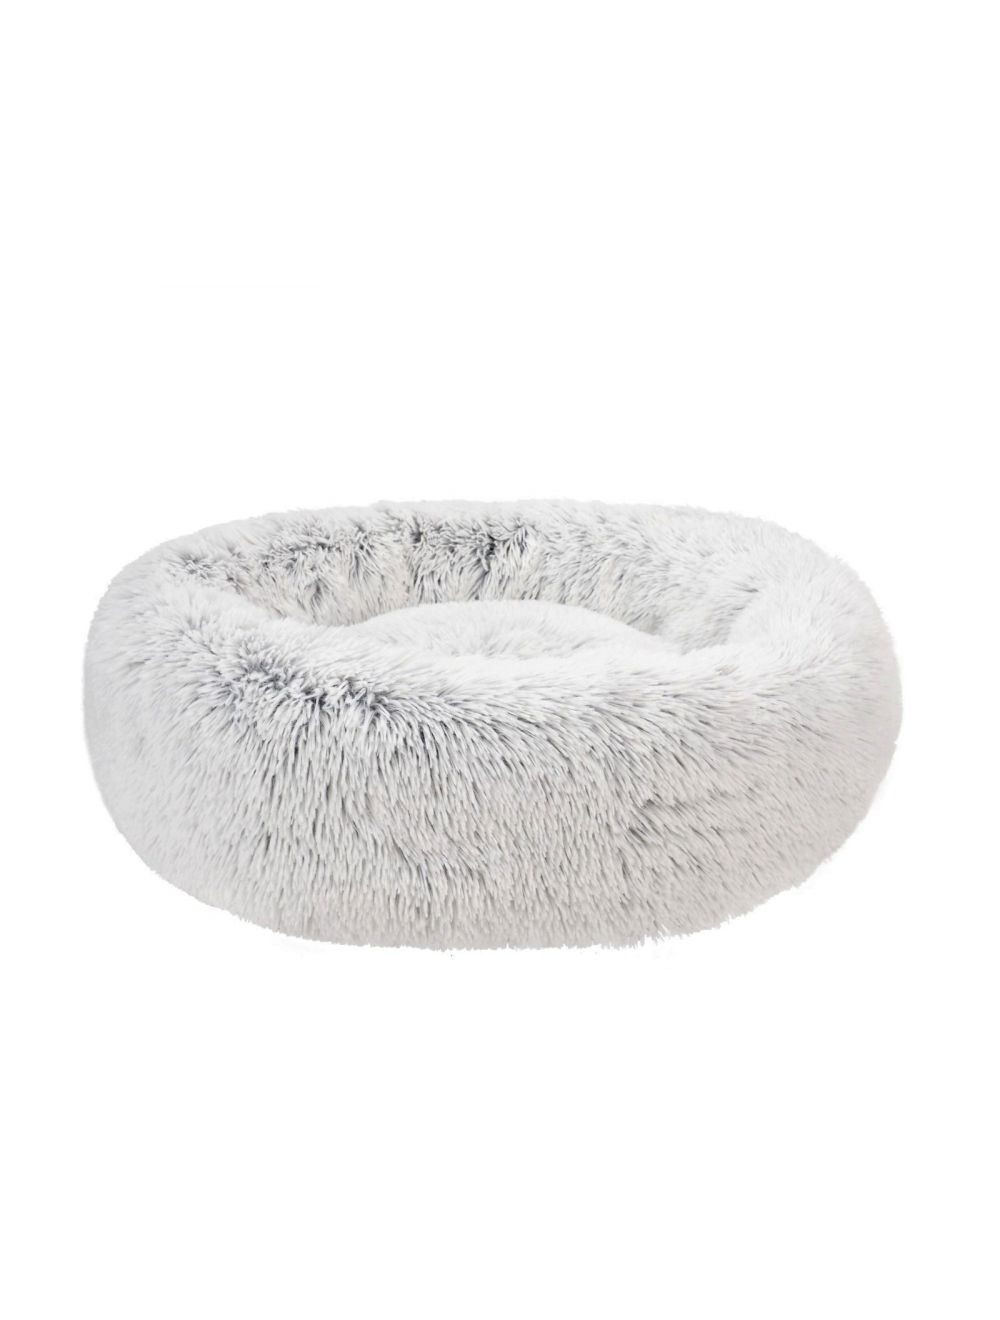 Fluffy - Dogbed XL, Frozen white - (697271866303) - Kjæledyr og utstyr